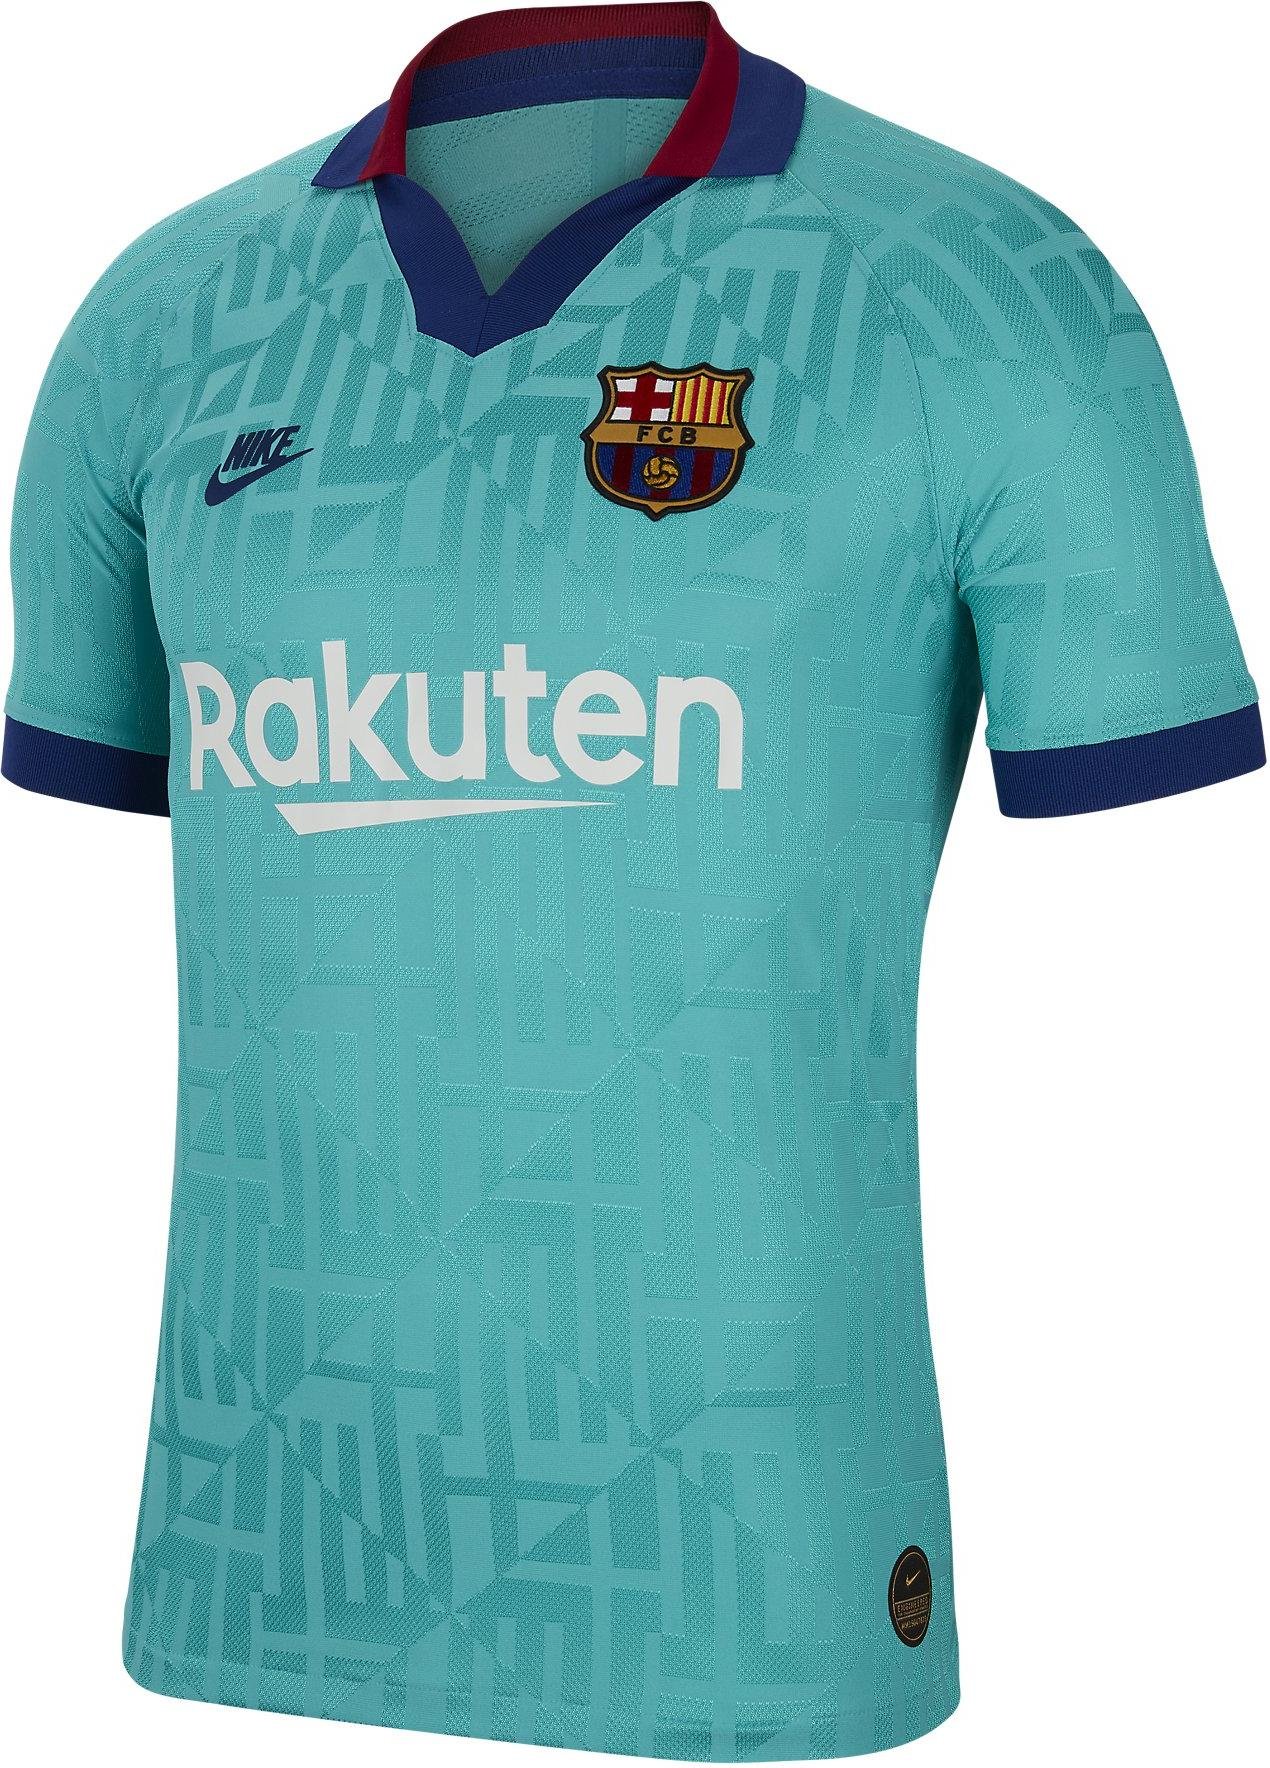 Pánský dres s krátkým rukávem Nike Vapor FC Barcelona 2019/20